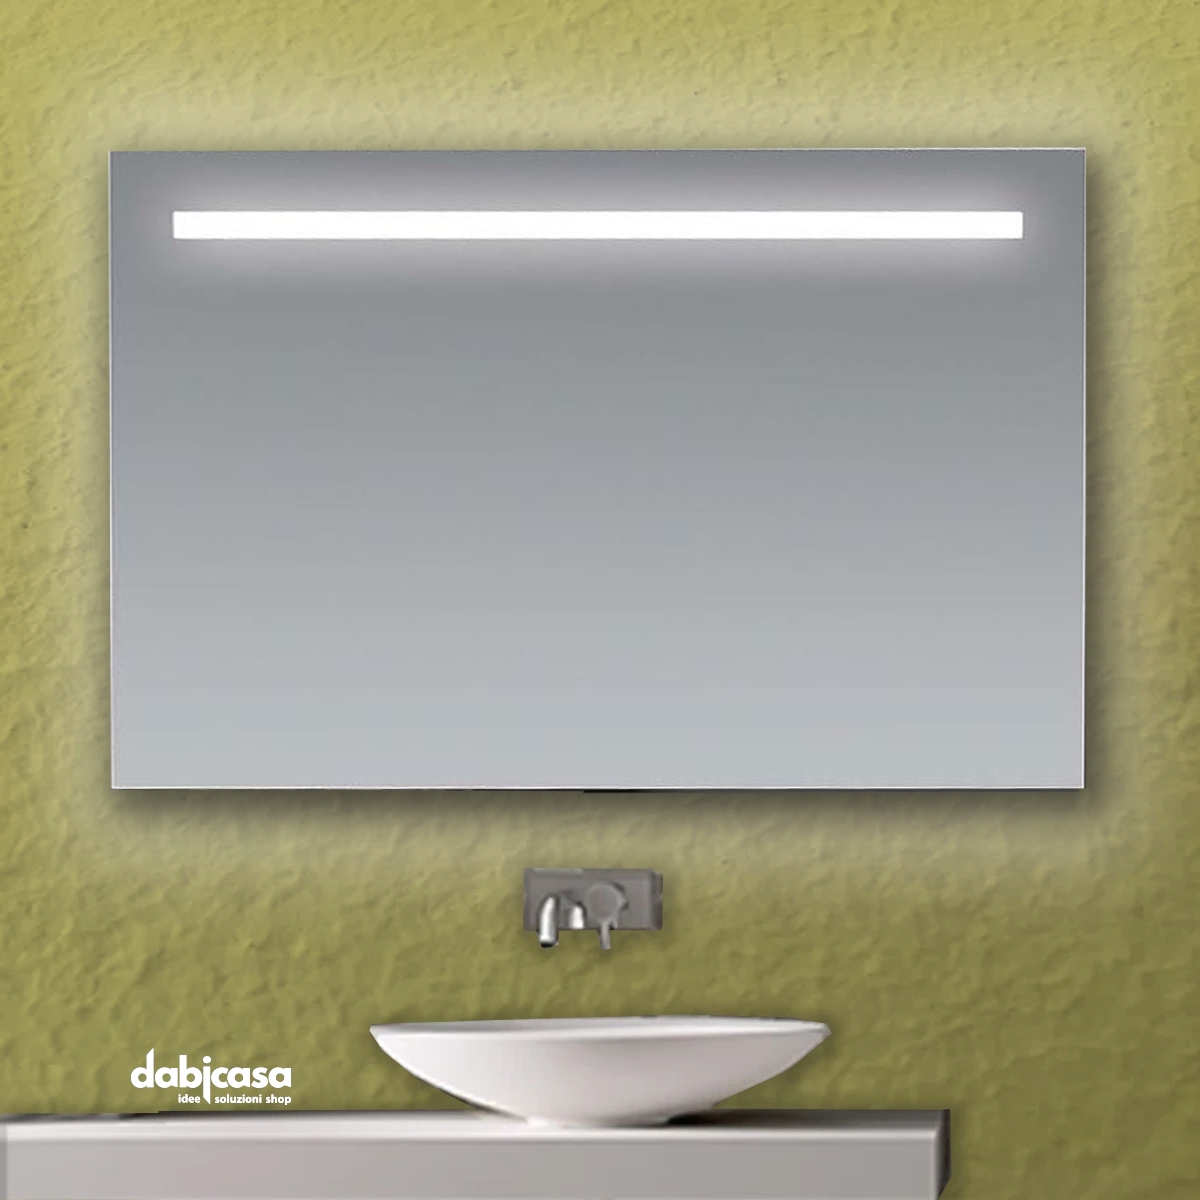 Specchio Linea Led "Line" Retroilluminato Con Fascia Superiore Luminosa 70x105cm freeshipping - Dabicasa